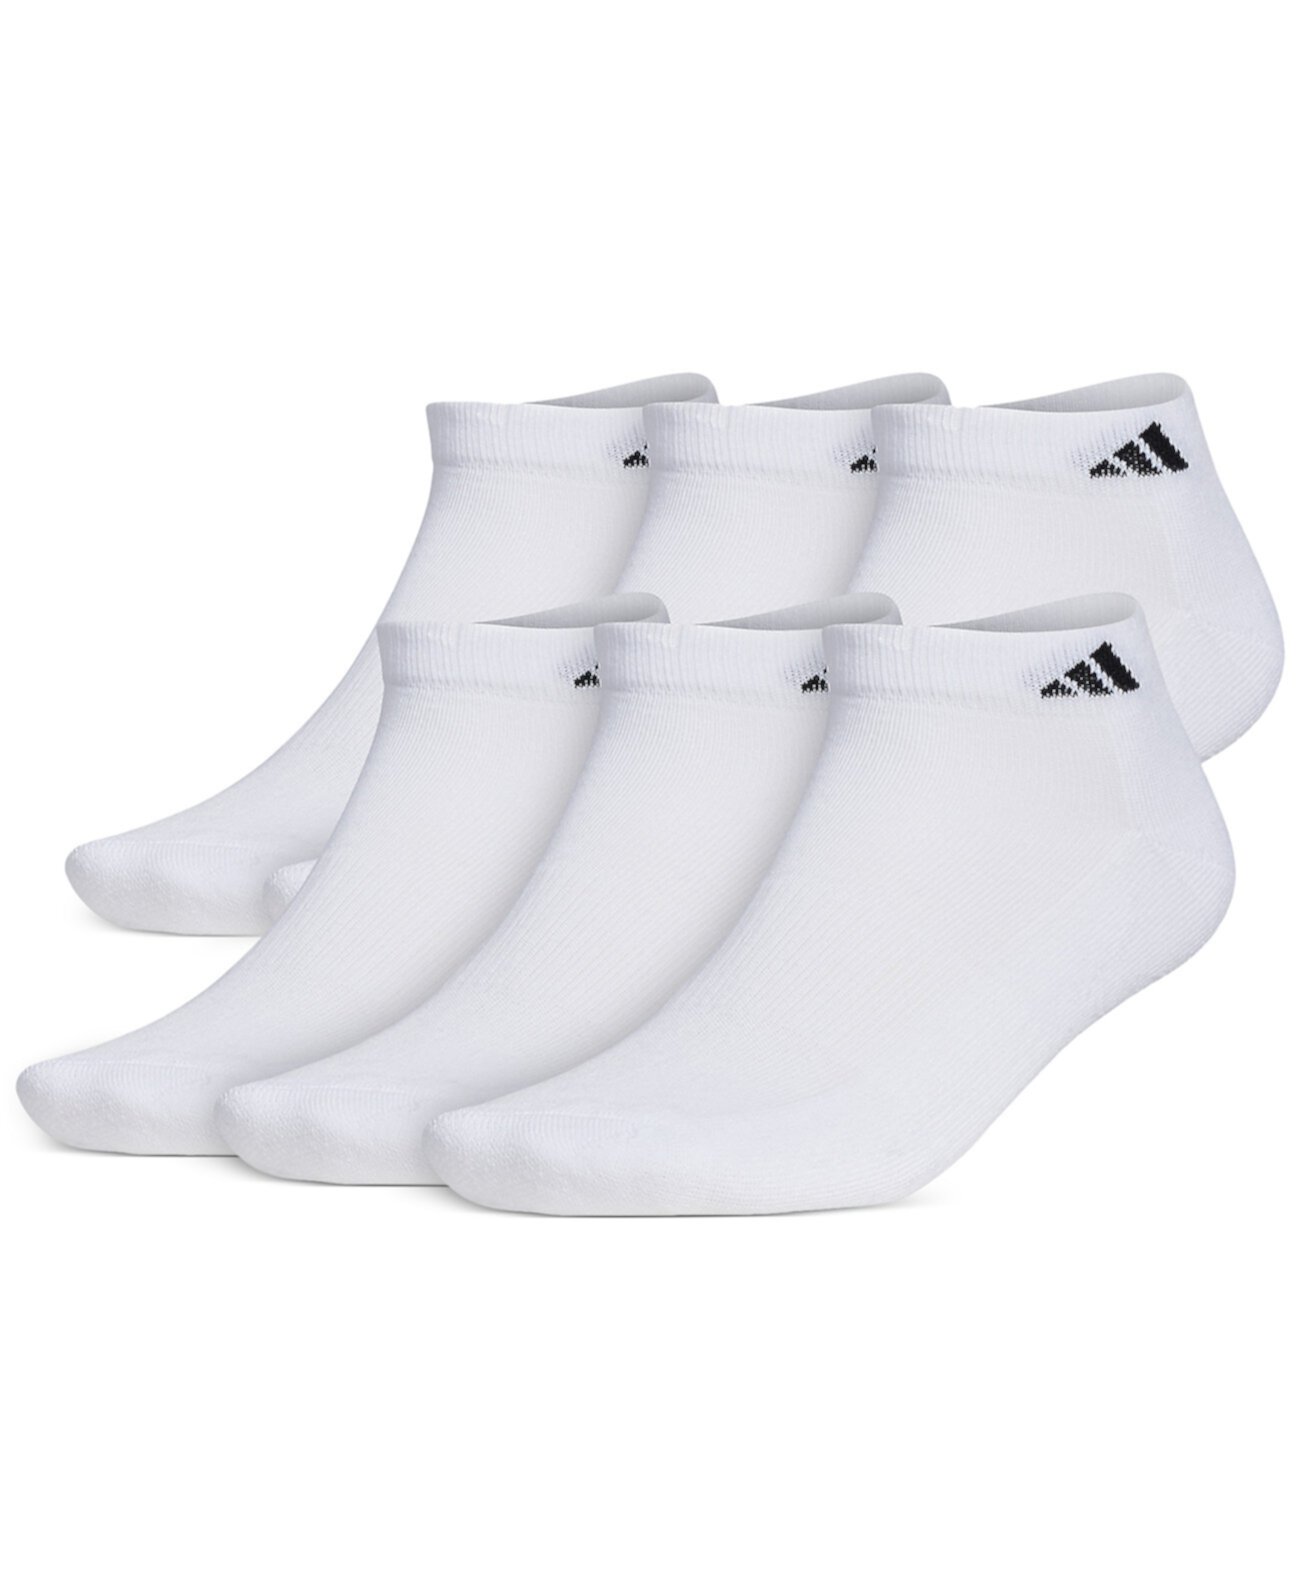 Мужские мягкие носки увеличенного размера с низким вырезом, 6 шт. В упаковке Adidas